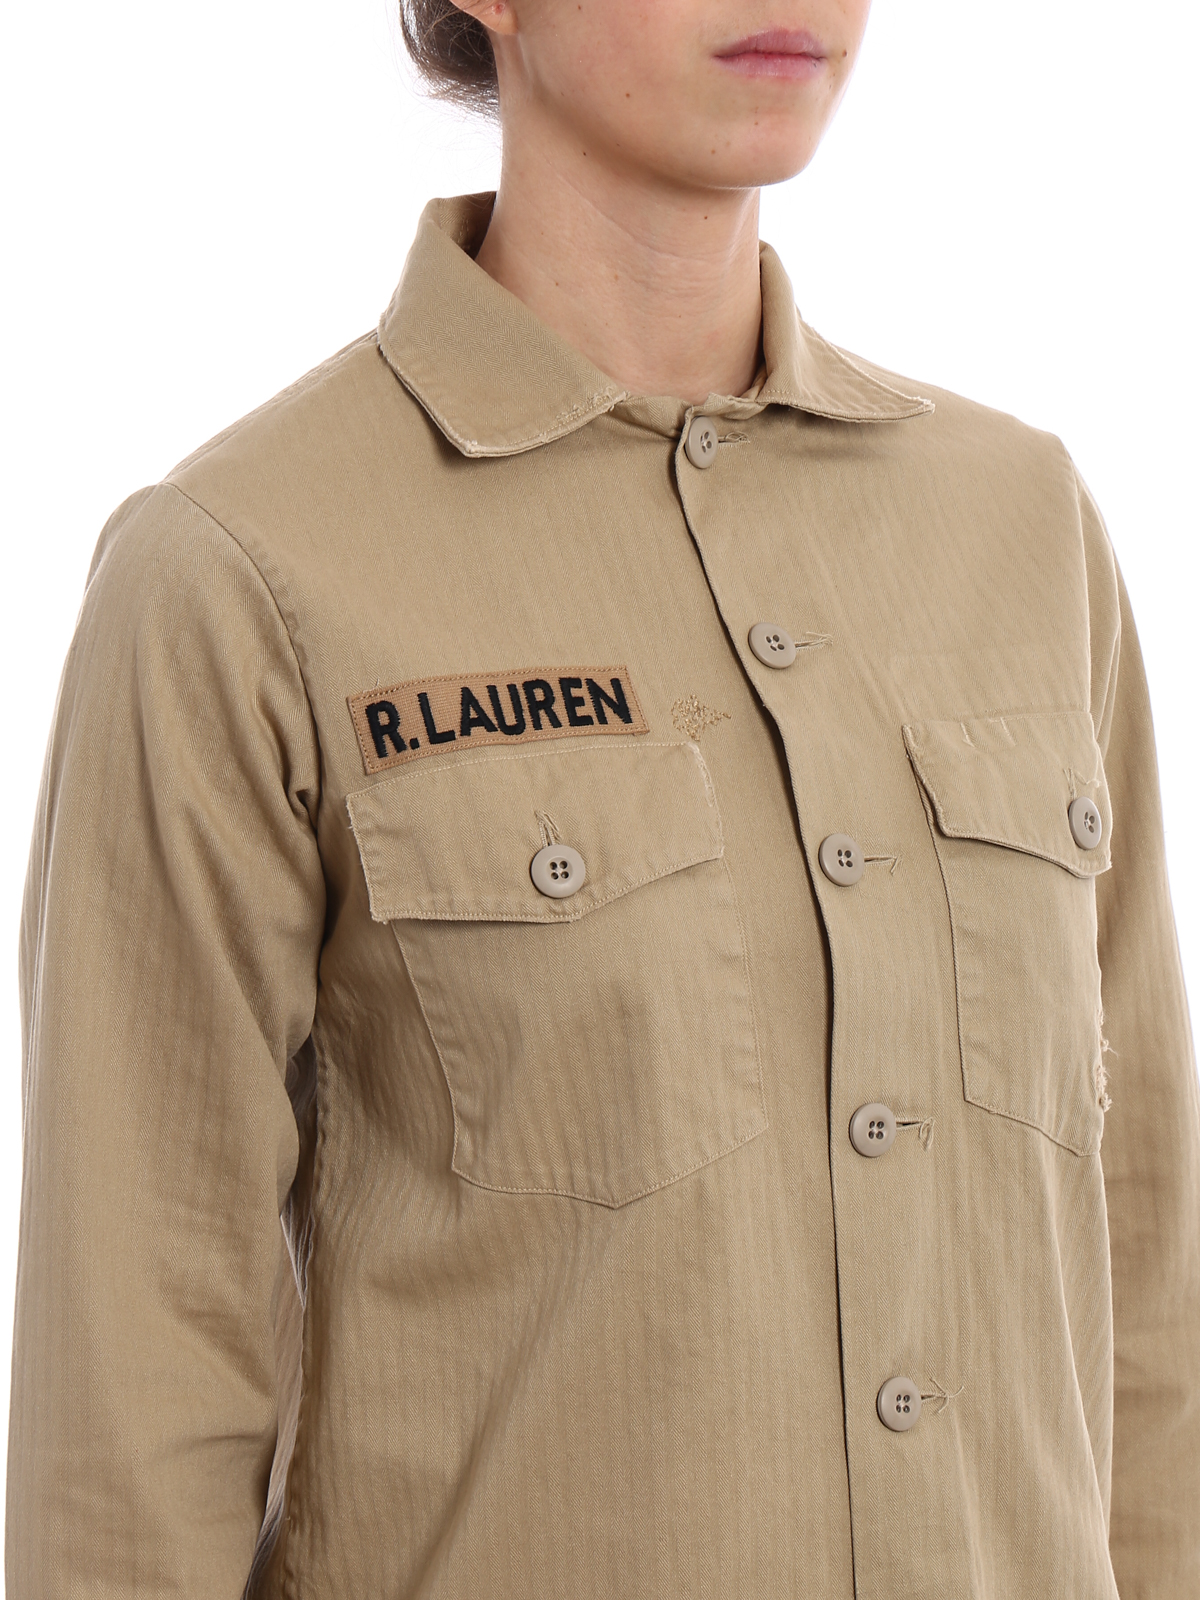 ralph lauren shirt jacket